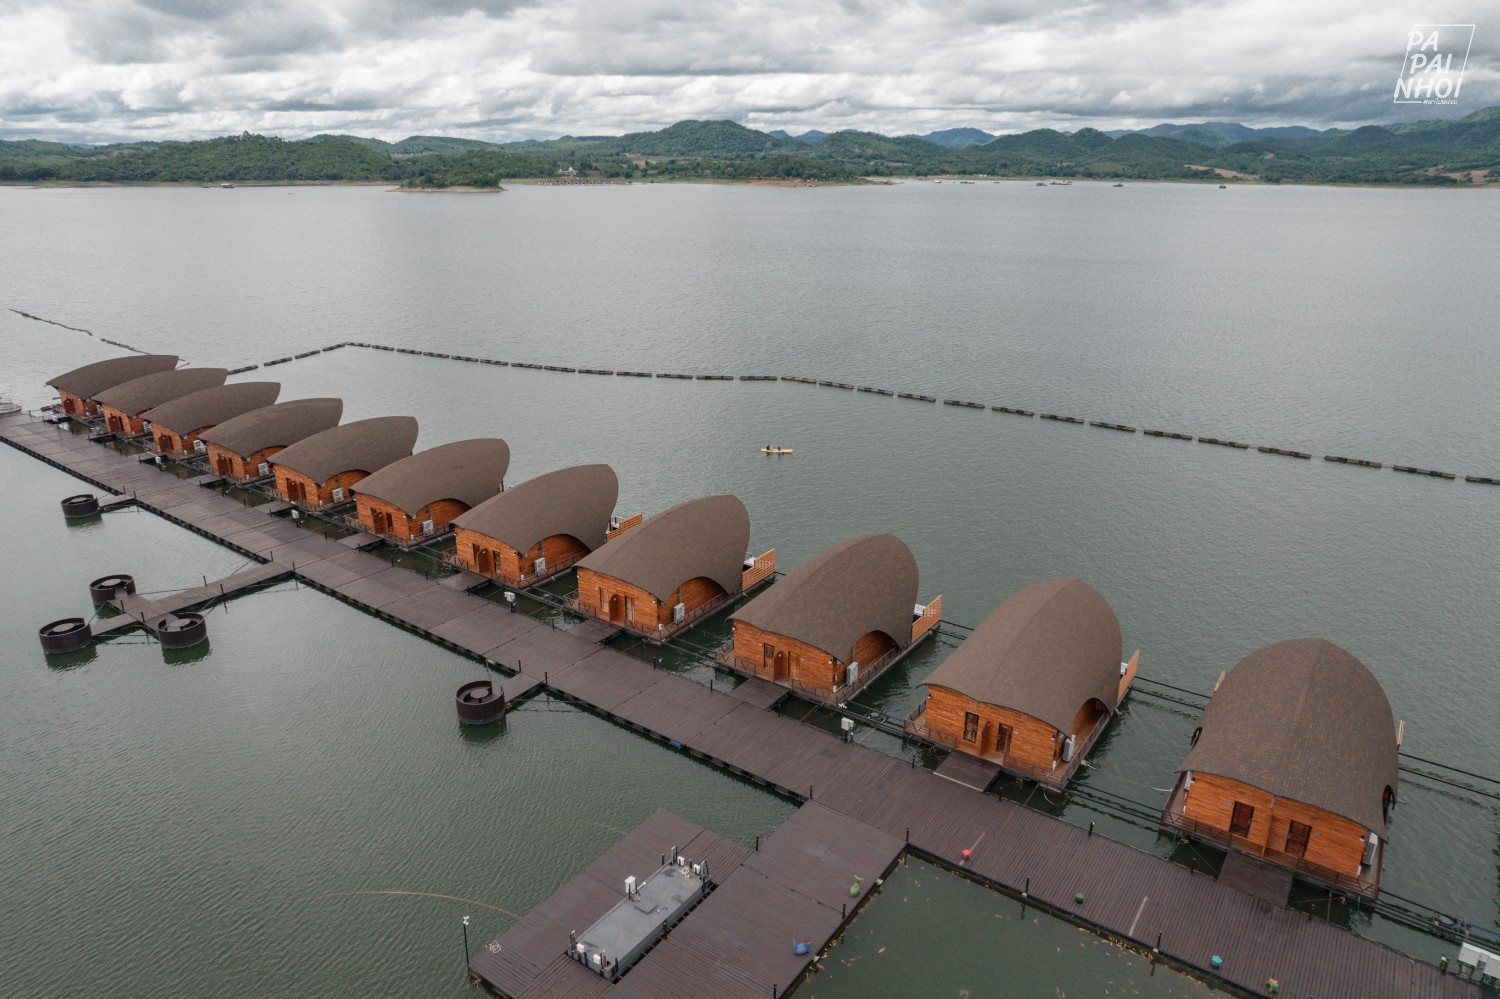 นอนแพริมน้ำ กาญจนบุรี ที่พักเปิดใหม่ล่าสุด Leaf Lake Kanchanaburi - Pantip